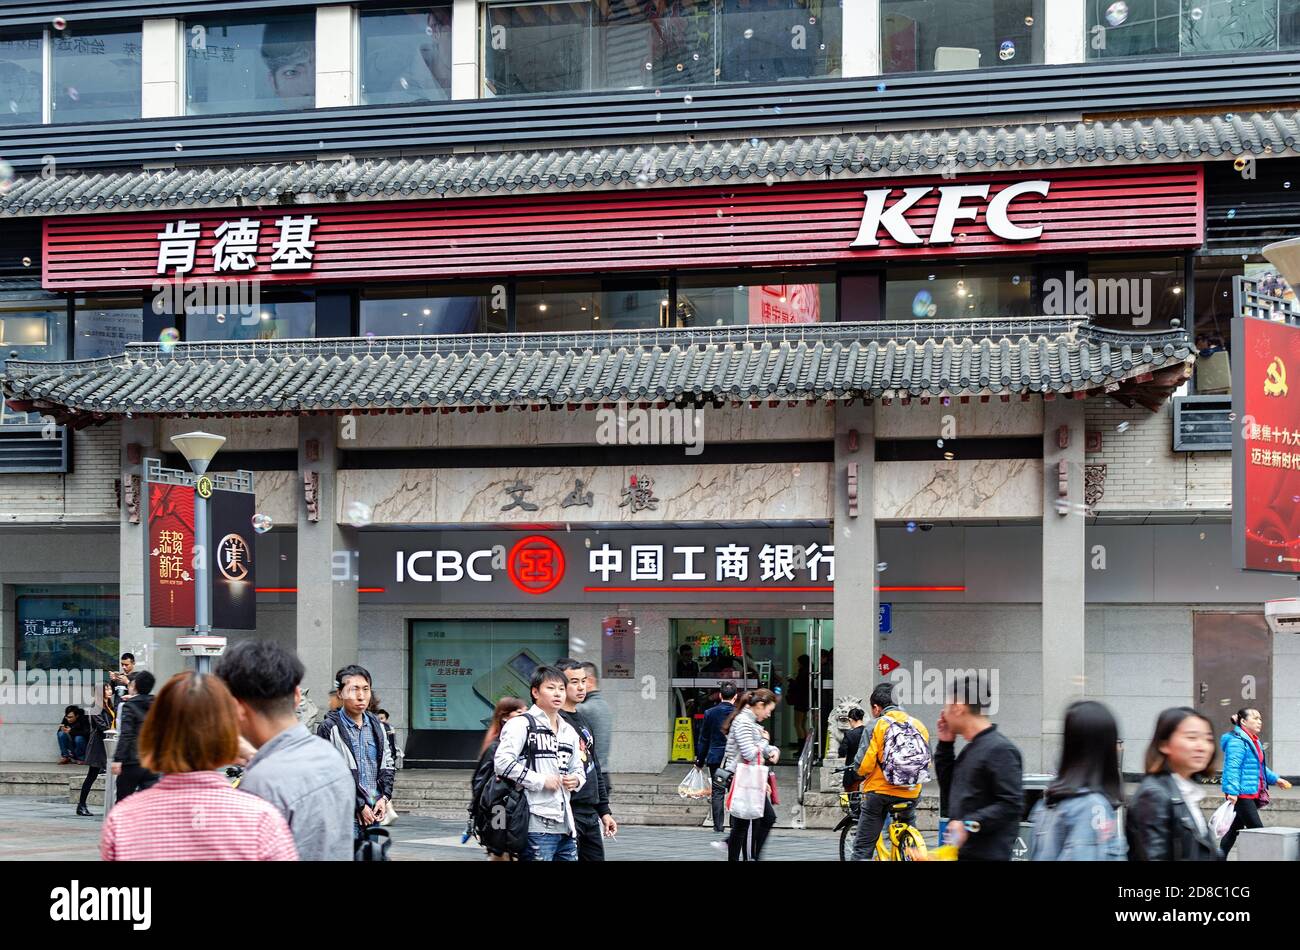 Außenansicht des Restaurants KFC und ICBC Bankfiliale in der chinesischen Straße. Straße mit Menschen, die sich drängen. Shenzhen, China, 2018-03-08. Foto mit Unschärfen in m Stockfoto